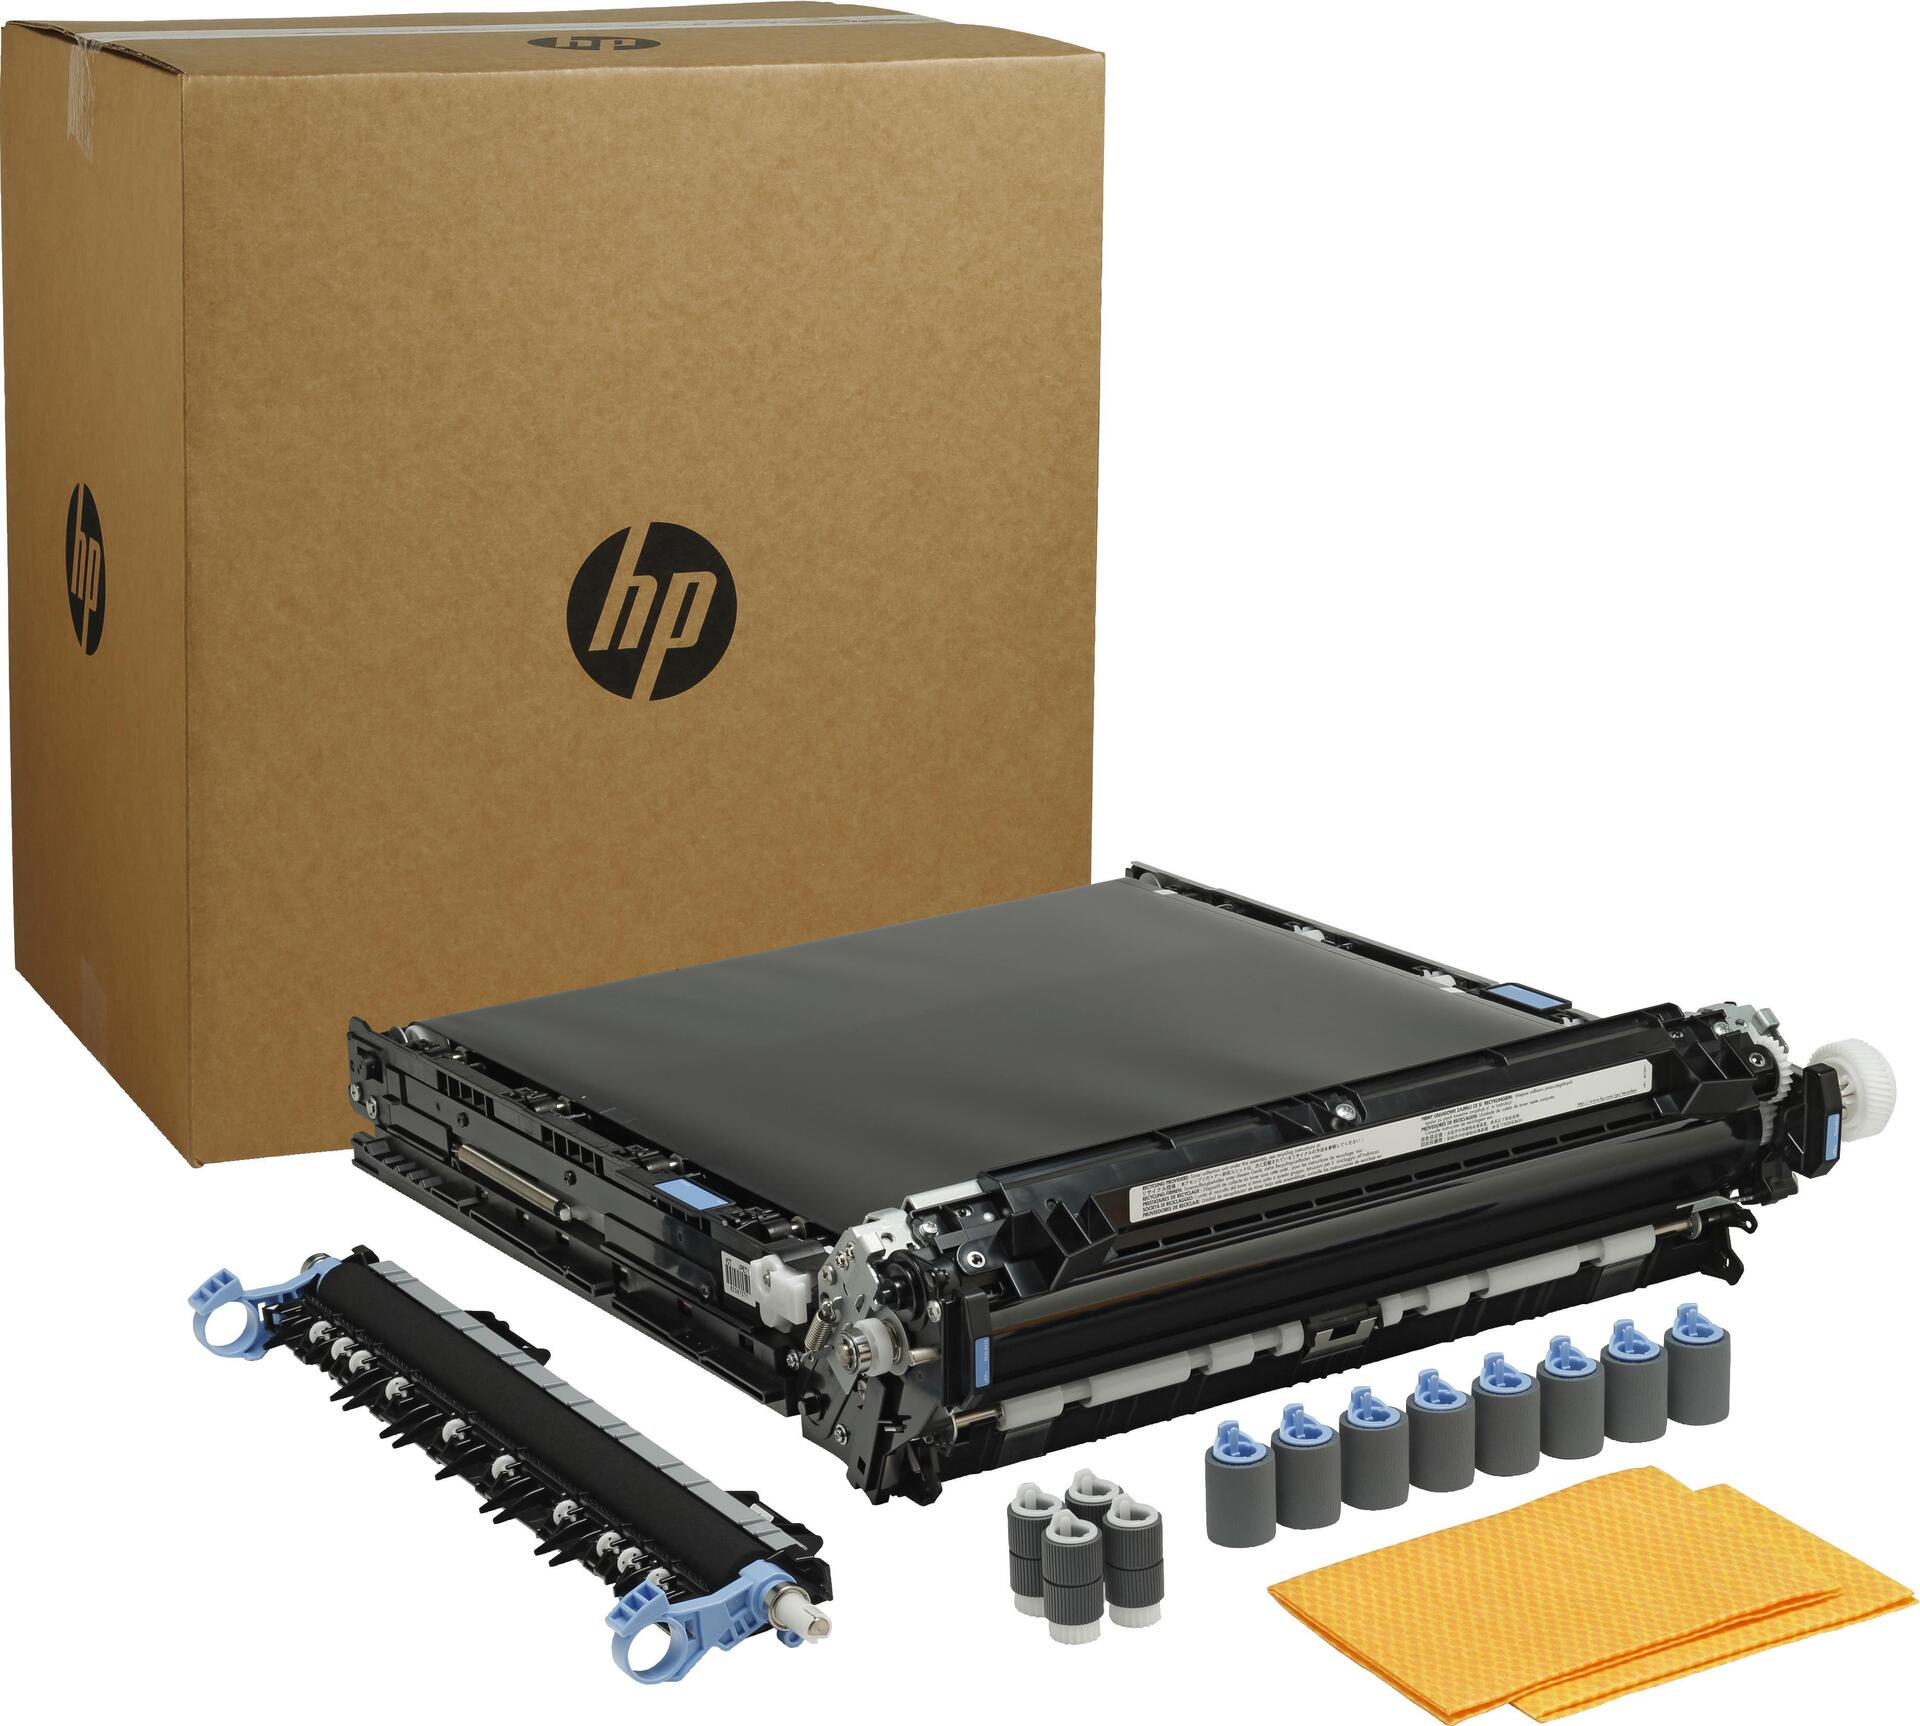 HP Transfer- und Walzen-Kit für Drucker (D7H14-67901)